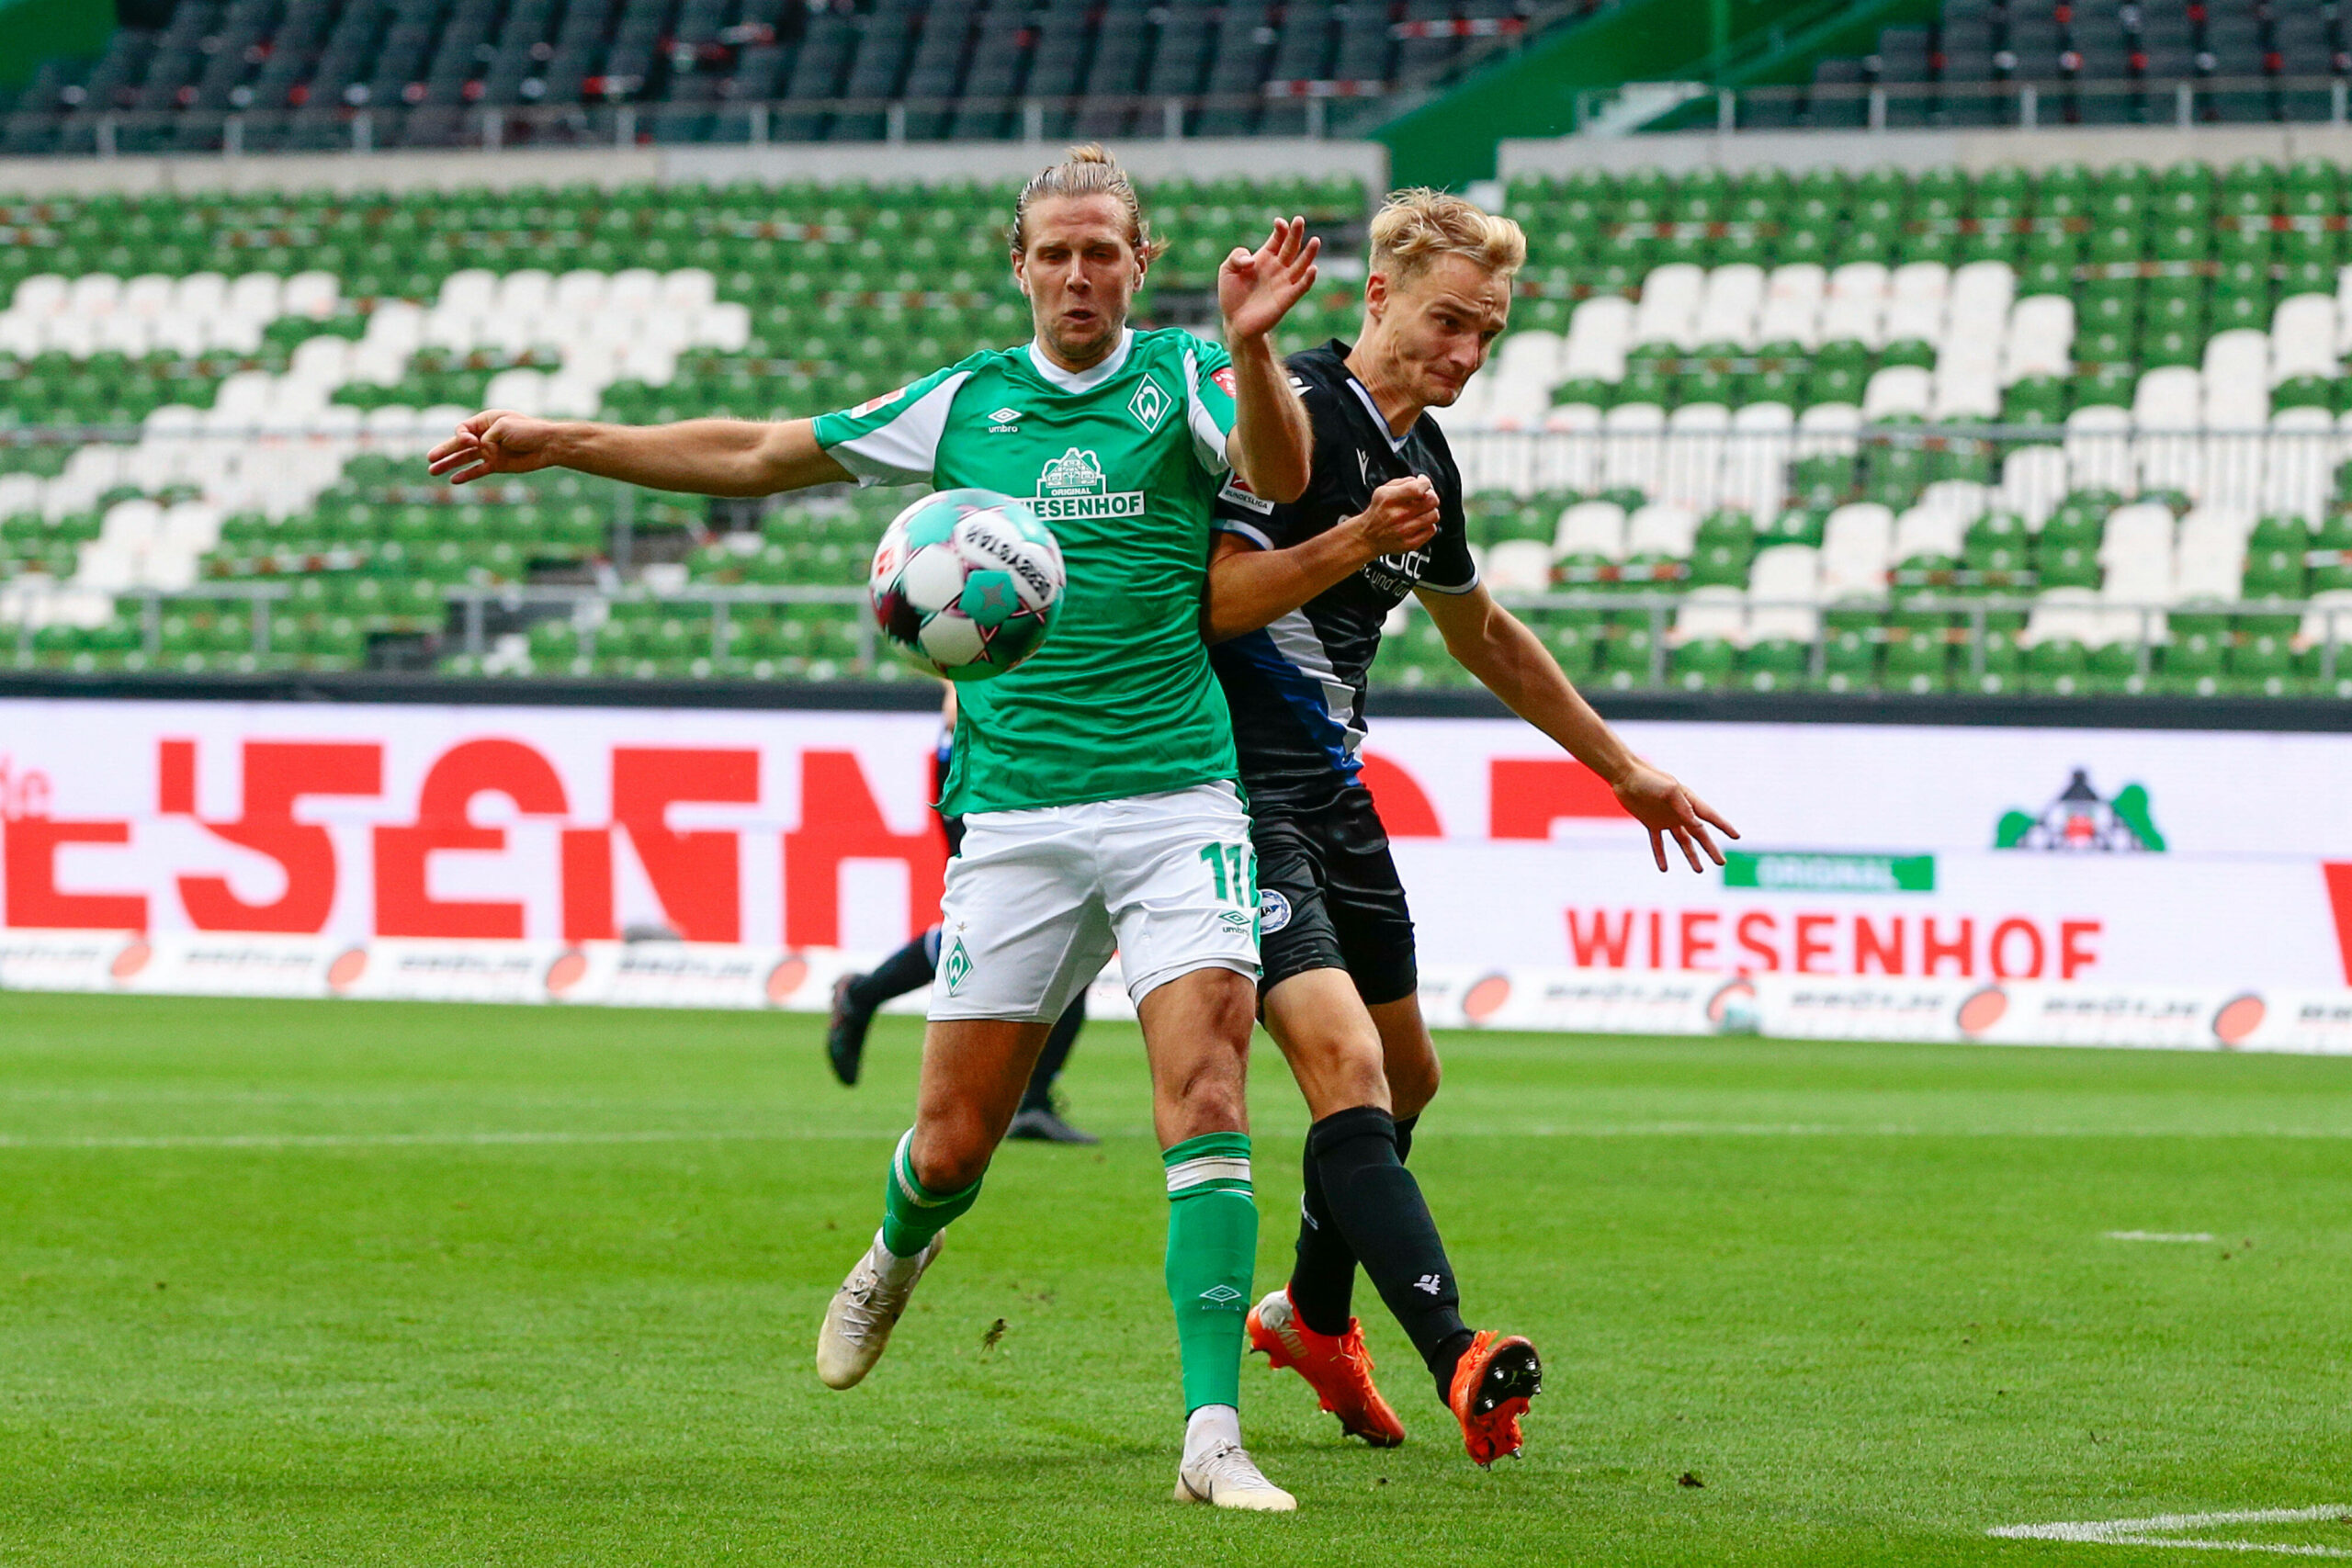 Bielefeld empfängt Bremen zum Nachholspiel: Wer sackt die Big Points ein?